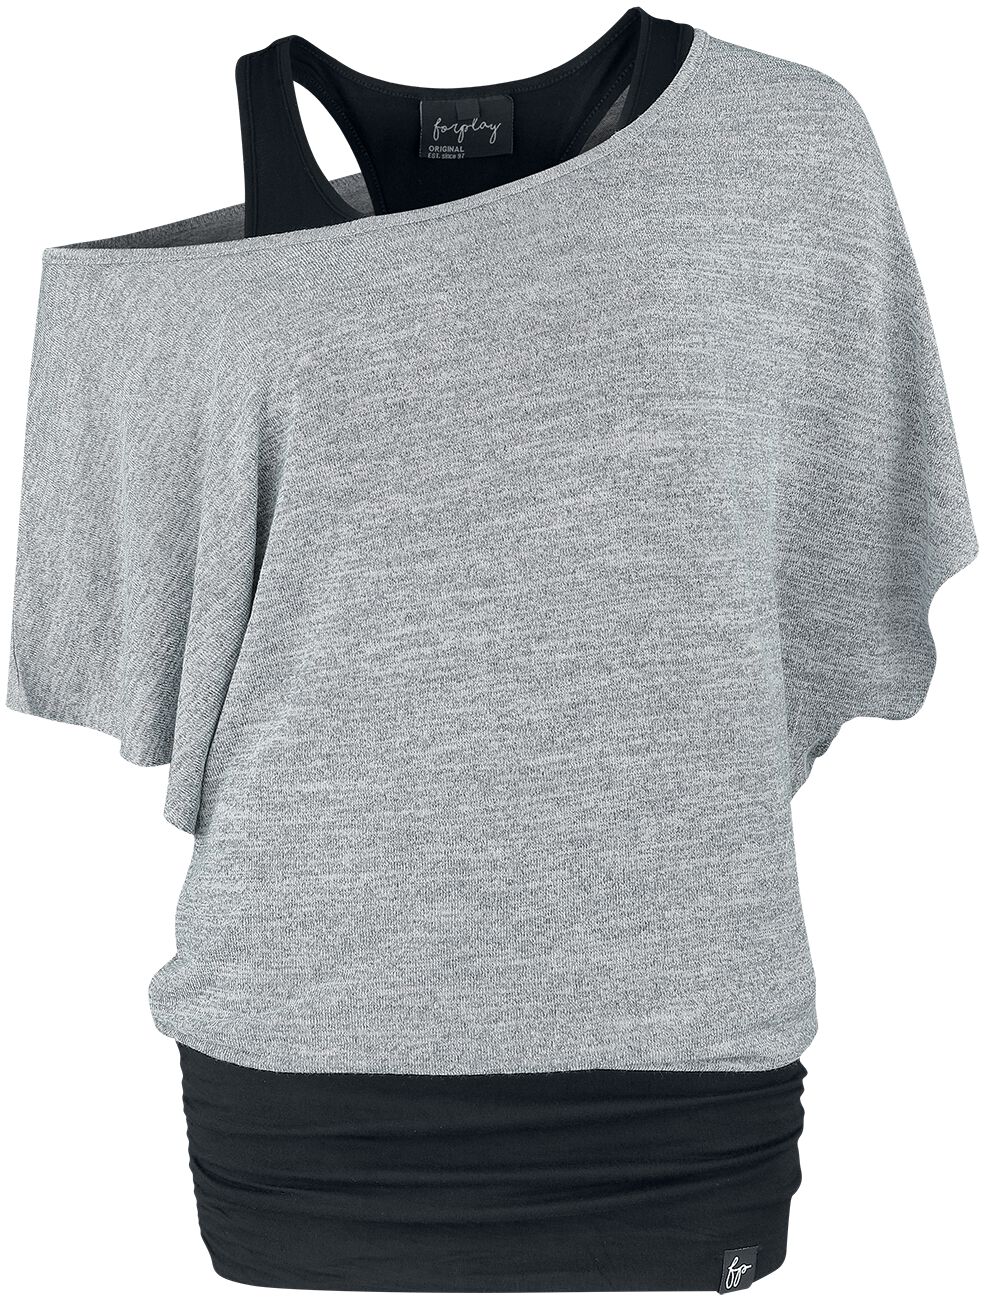 Image of T-Shirt di Forplay - Jean - S a XXL - Donna - nero/grigio